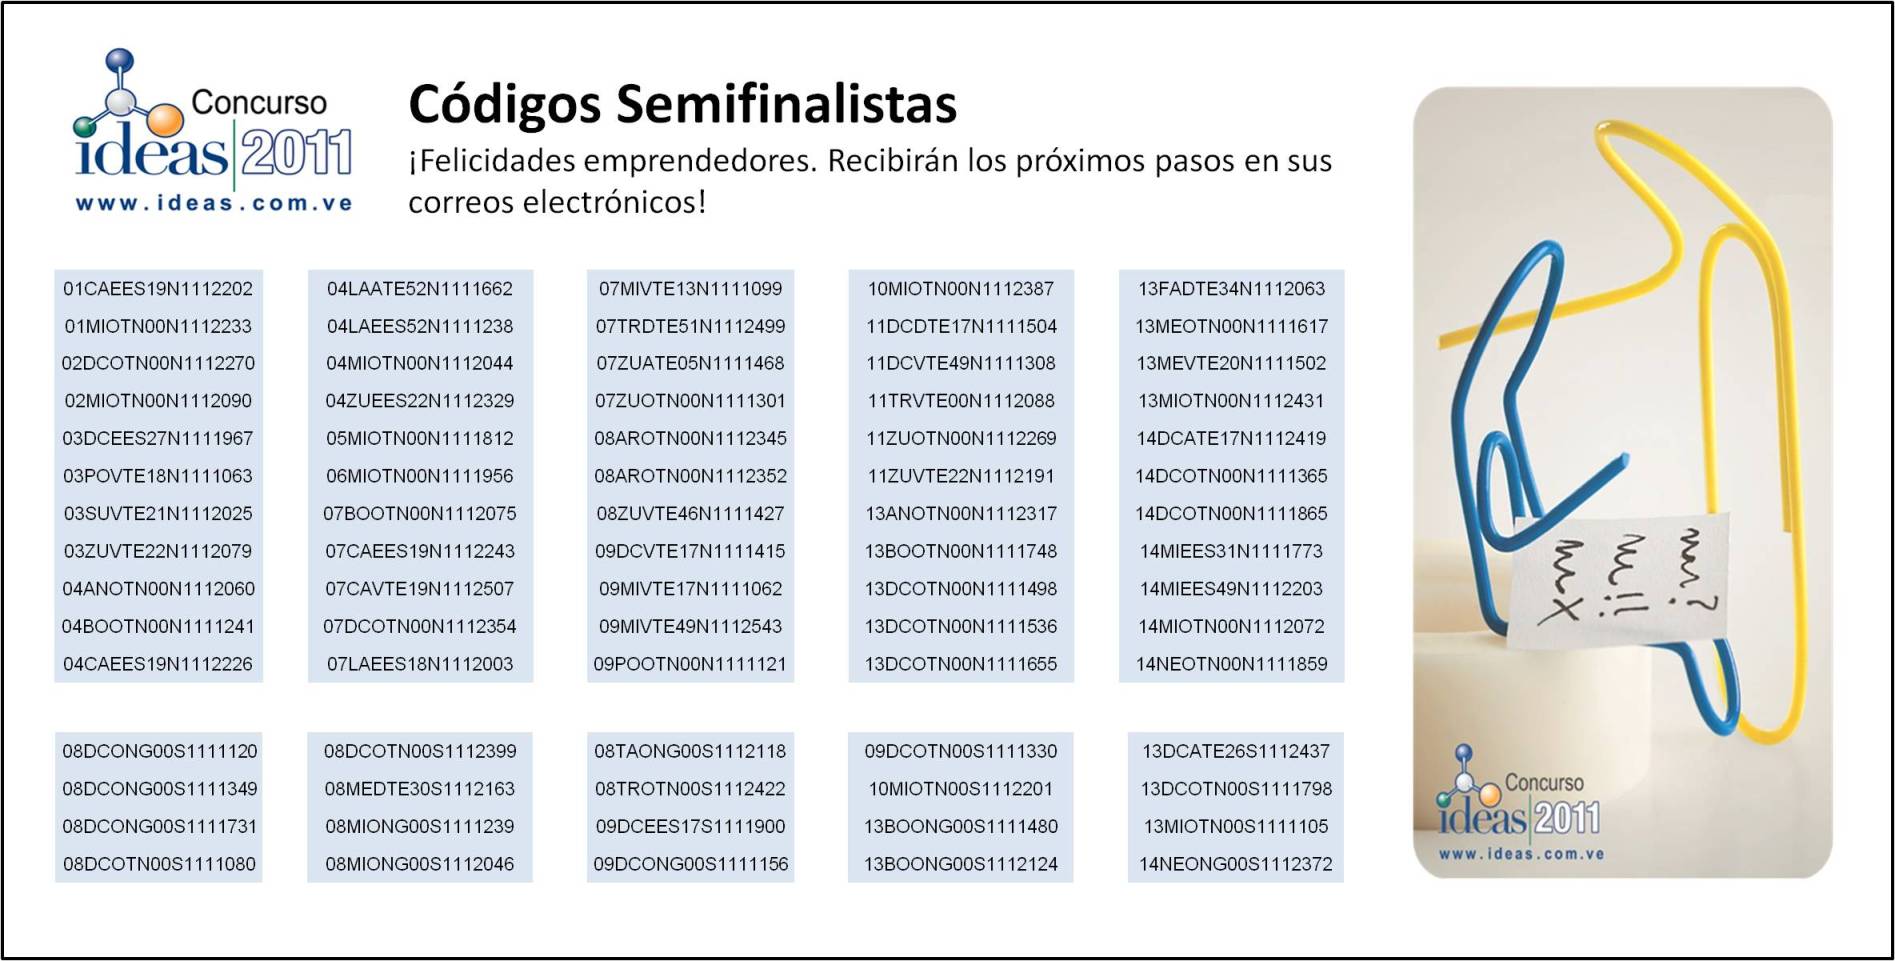 Archivo:Codigos__Semifinalistas_Ideas_2011.jpg